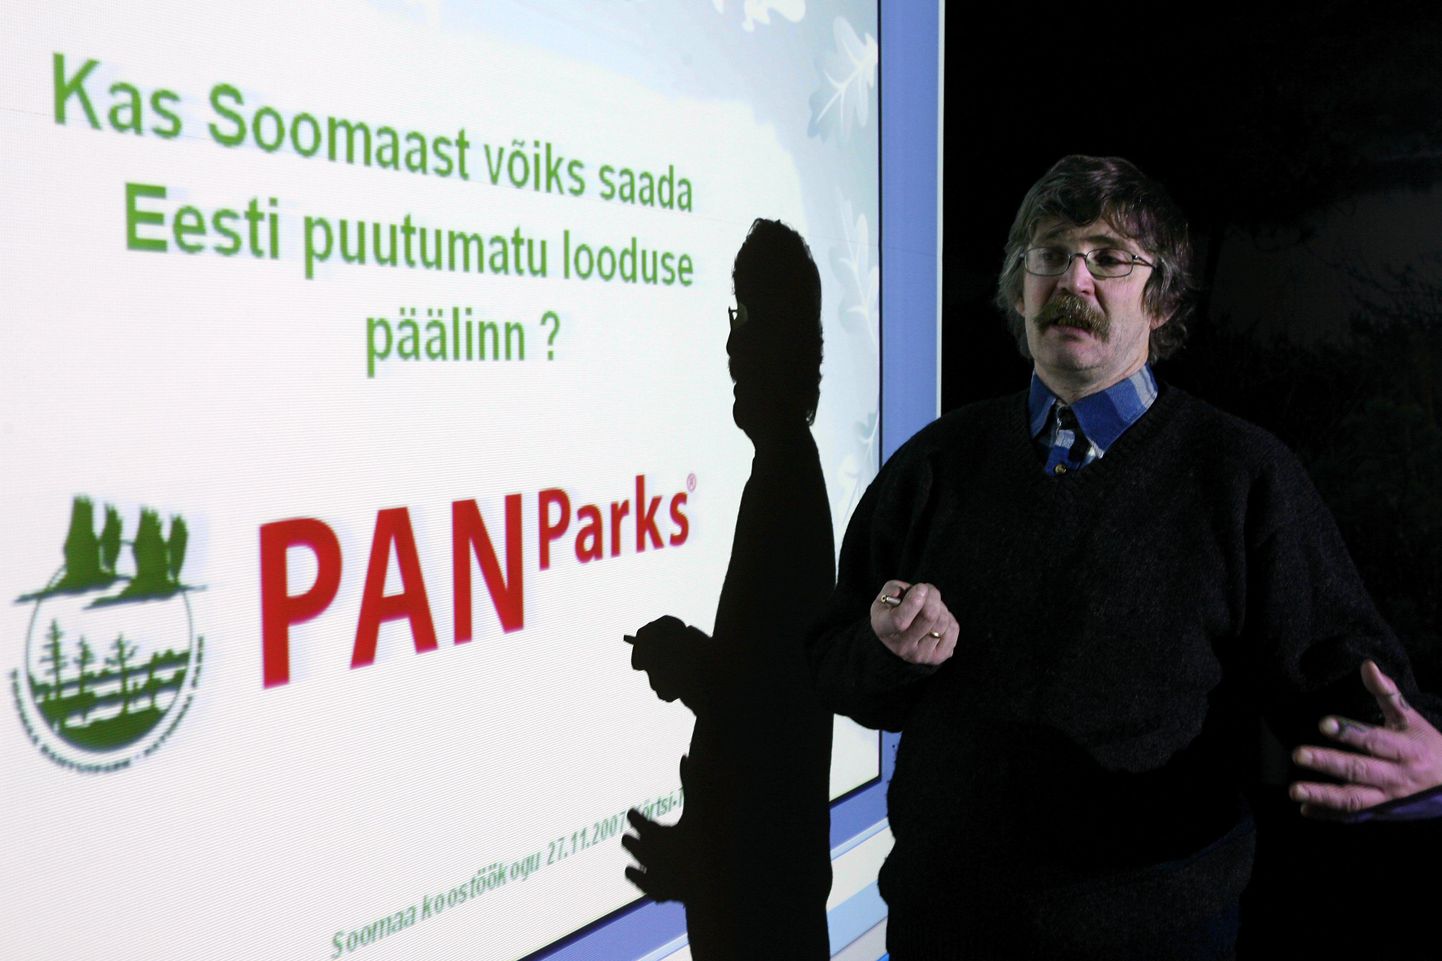 Hõbemärgi saanud Murel Merivee ja kuldmärgiga tunnustatud Agu Leivits (pildil) tegelesid sihikindlalt rahvusvahelise projektiga, mille tulemusena võeti Soomaa rahvuspark vastu Euroopa põlislooduse võrgustiku PAN Parks liikmeks.